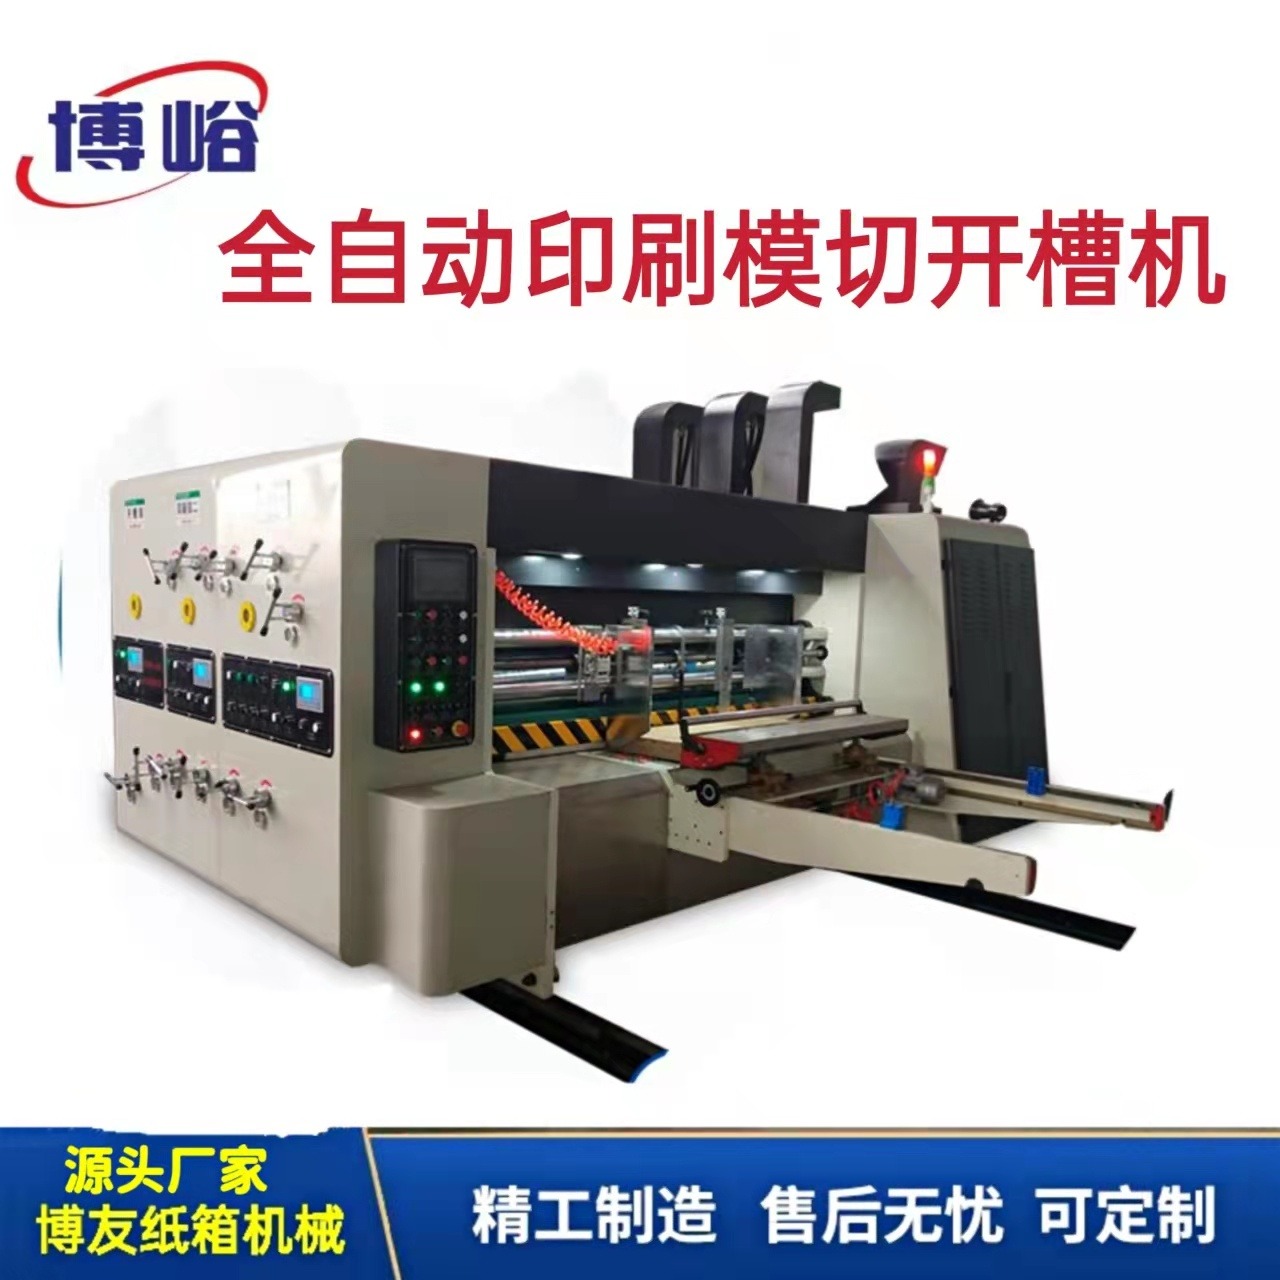 印刷機 半自動水墨印刷開槽機  BY-A全程吸附印刷上光烘干模切機  堆碼清廢收紙機  博友 全套機械